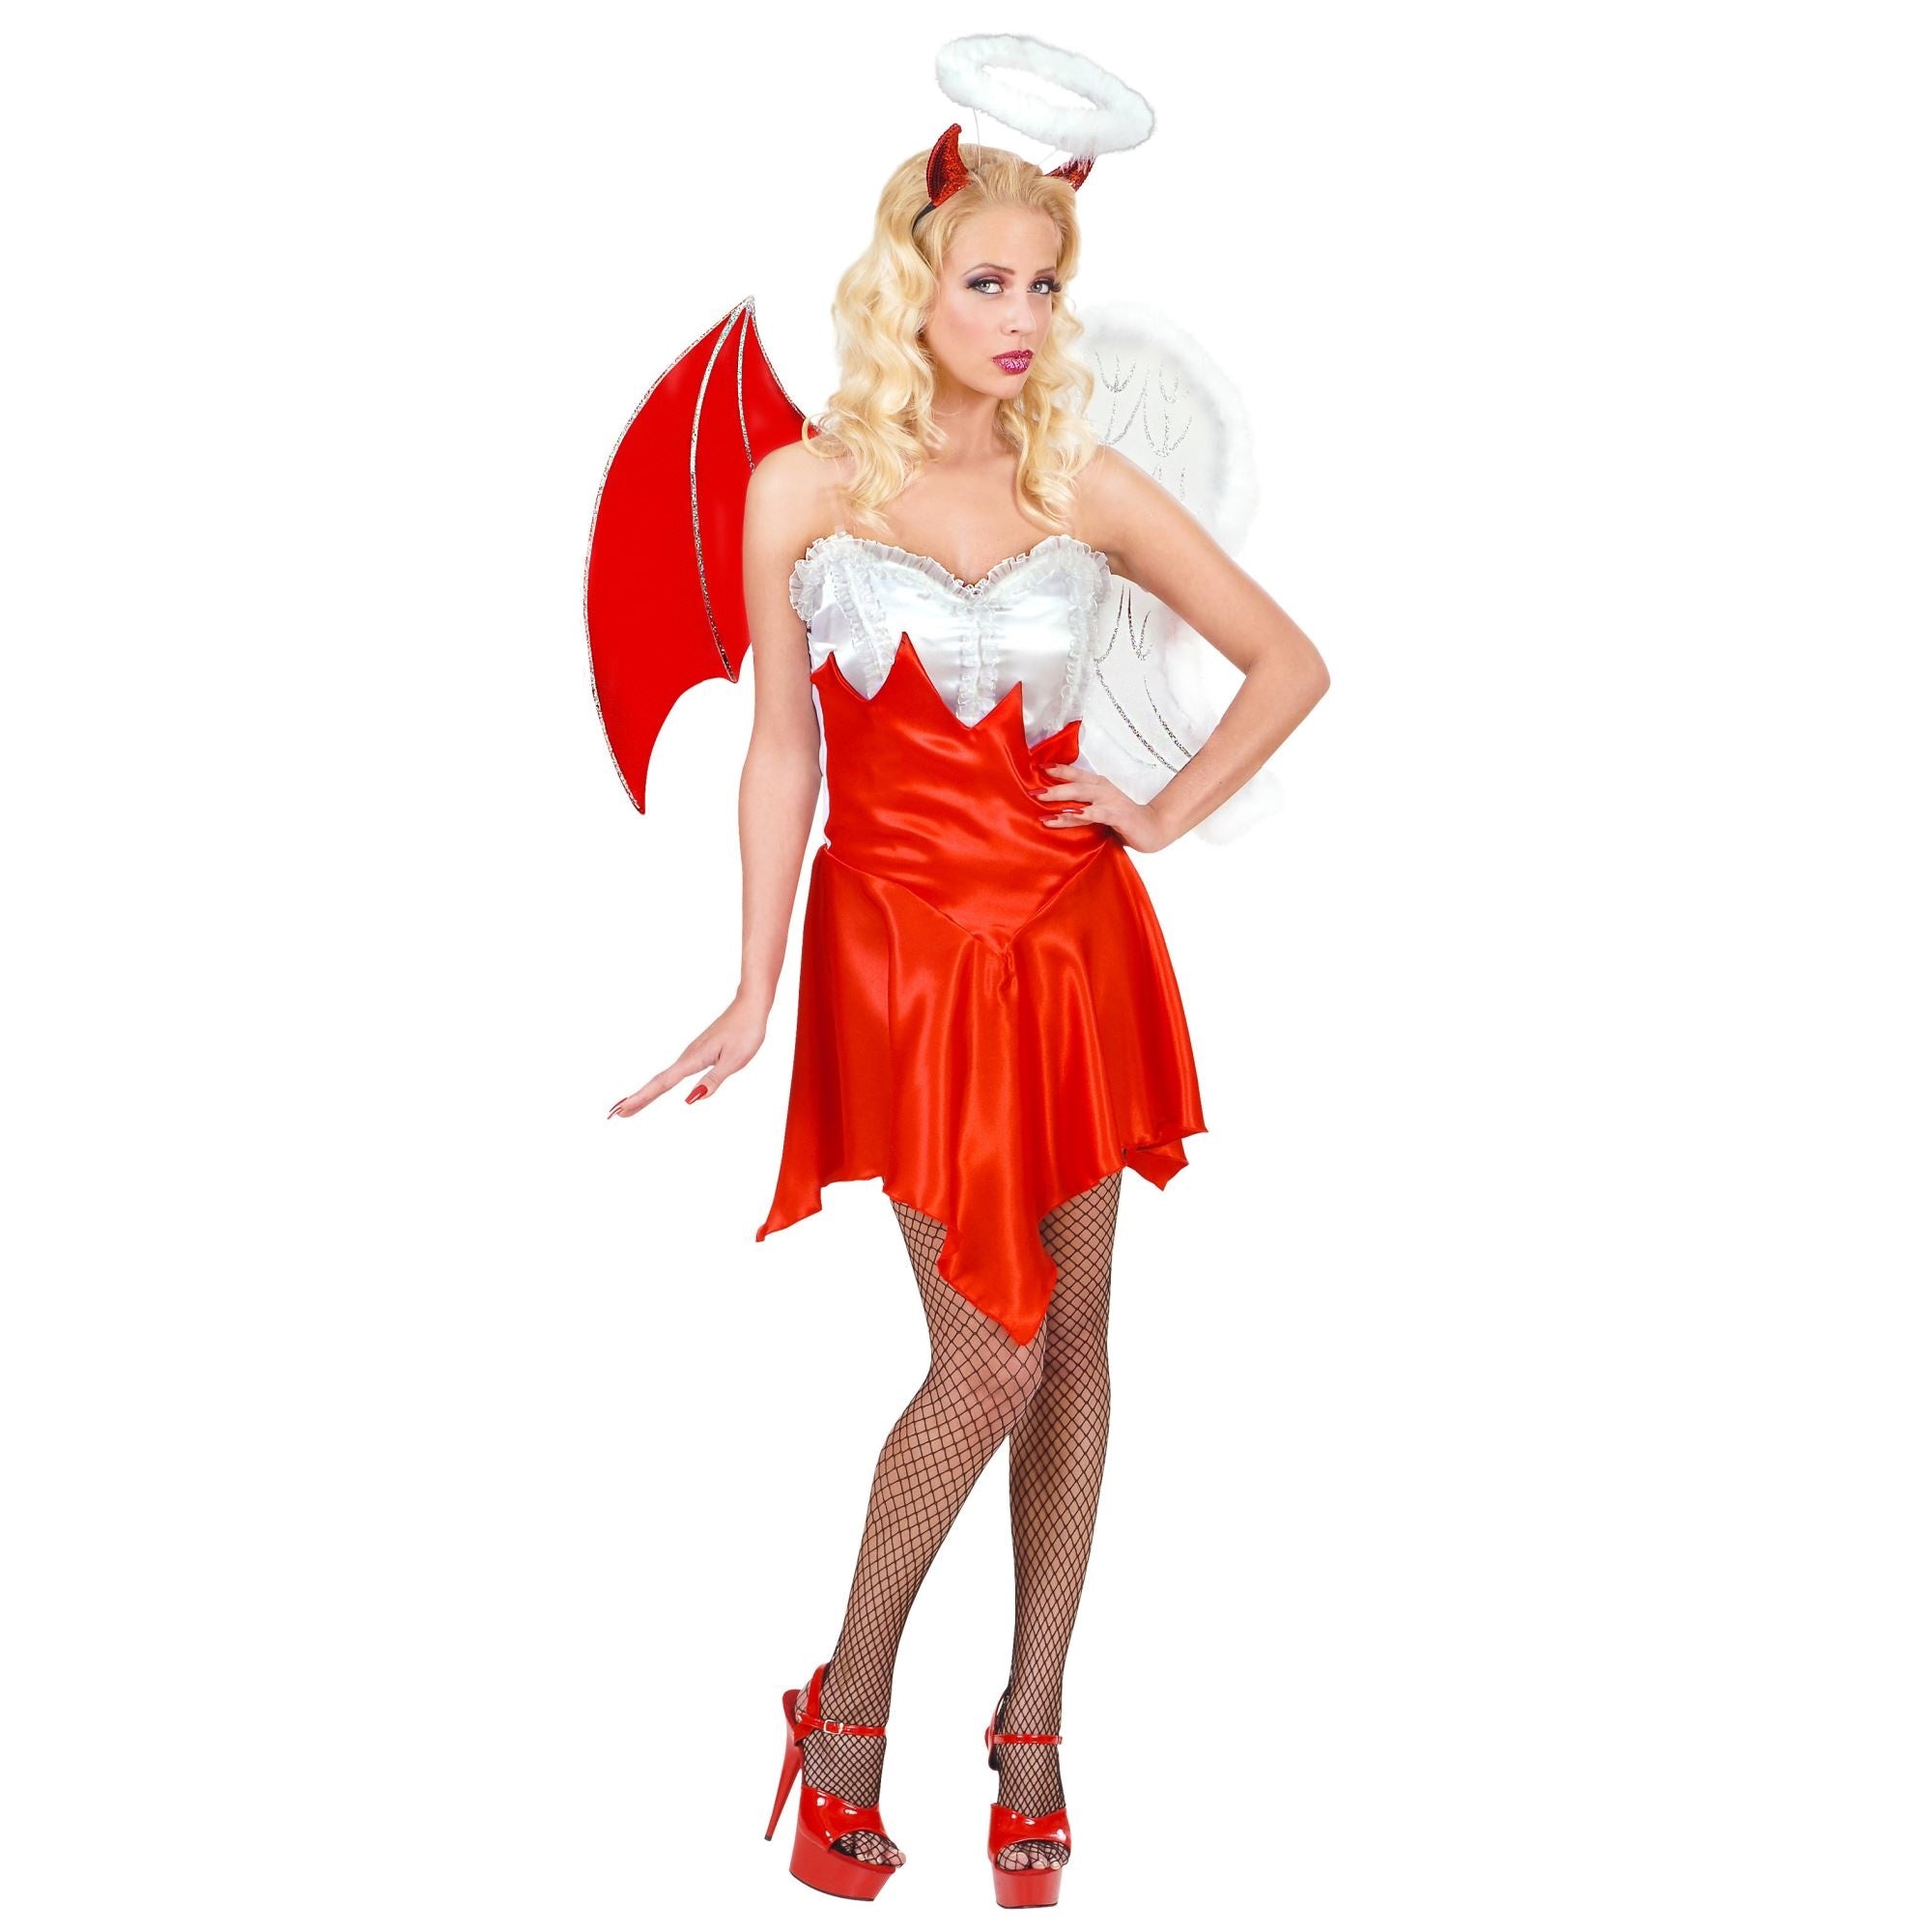 "Engel en Duivel Halloween kostuum voor vrouwen - Verkleedkleding - Large"